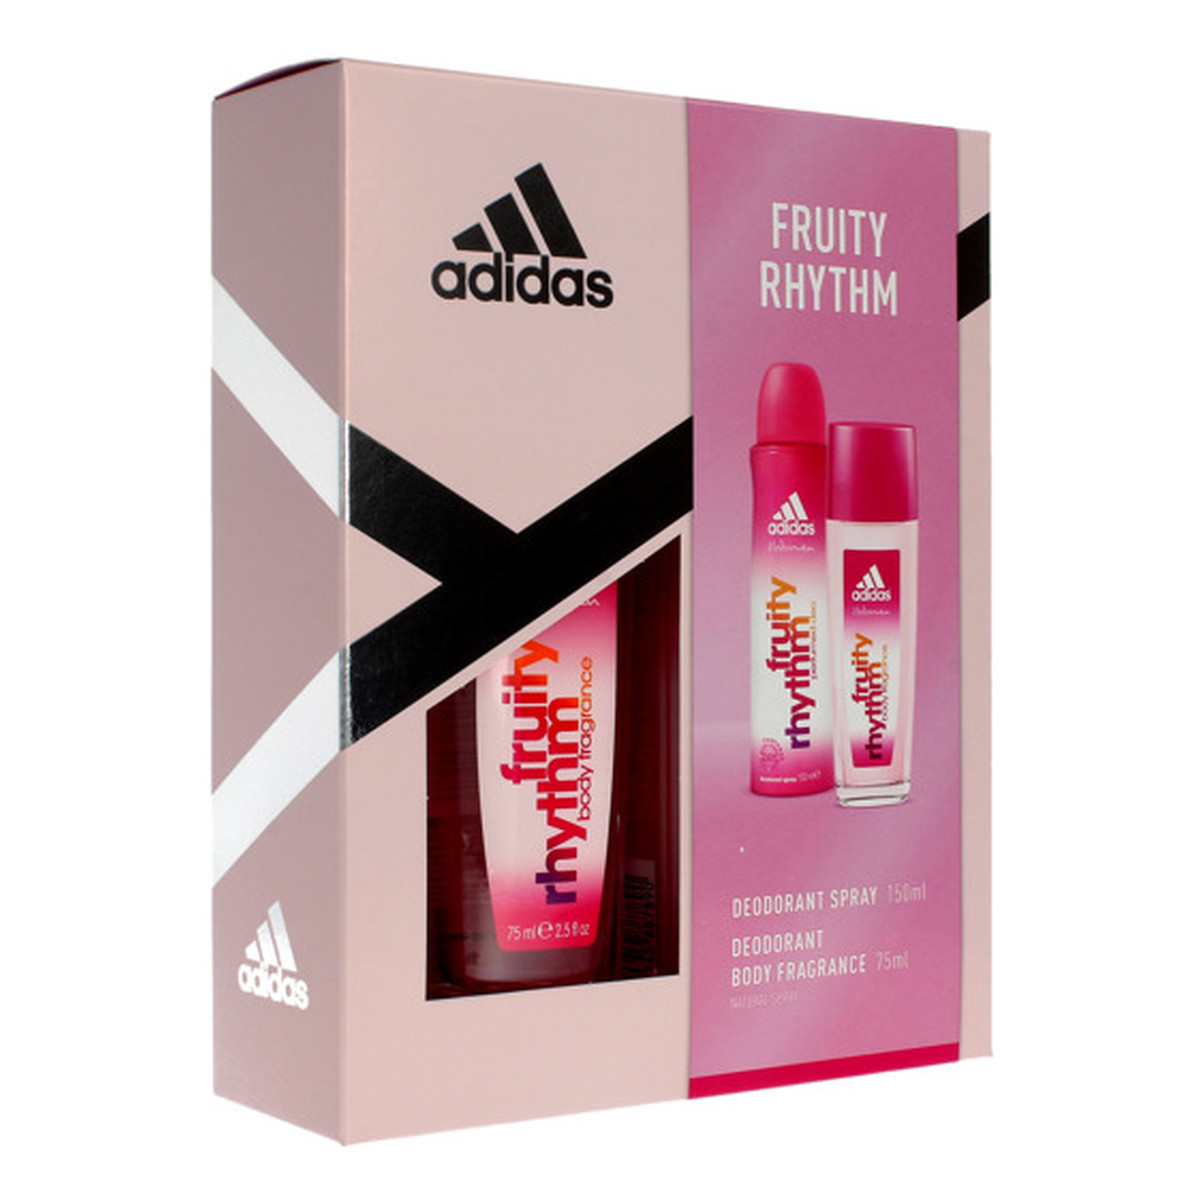 Adidas Fruity Rhythm Zestaw prezentowy (dezodorant 150ml+dezodorant 75ml)